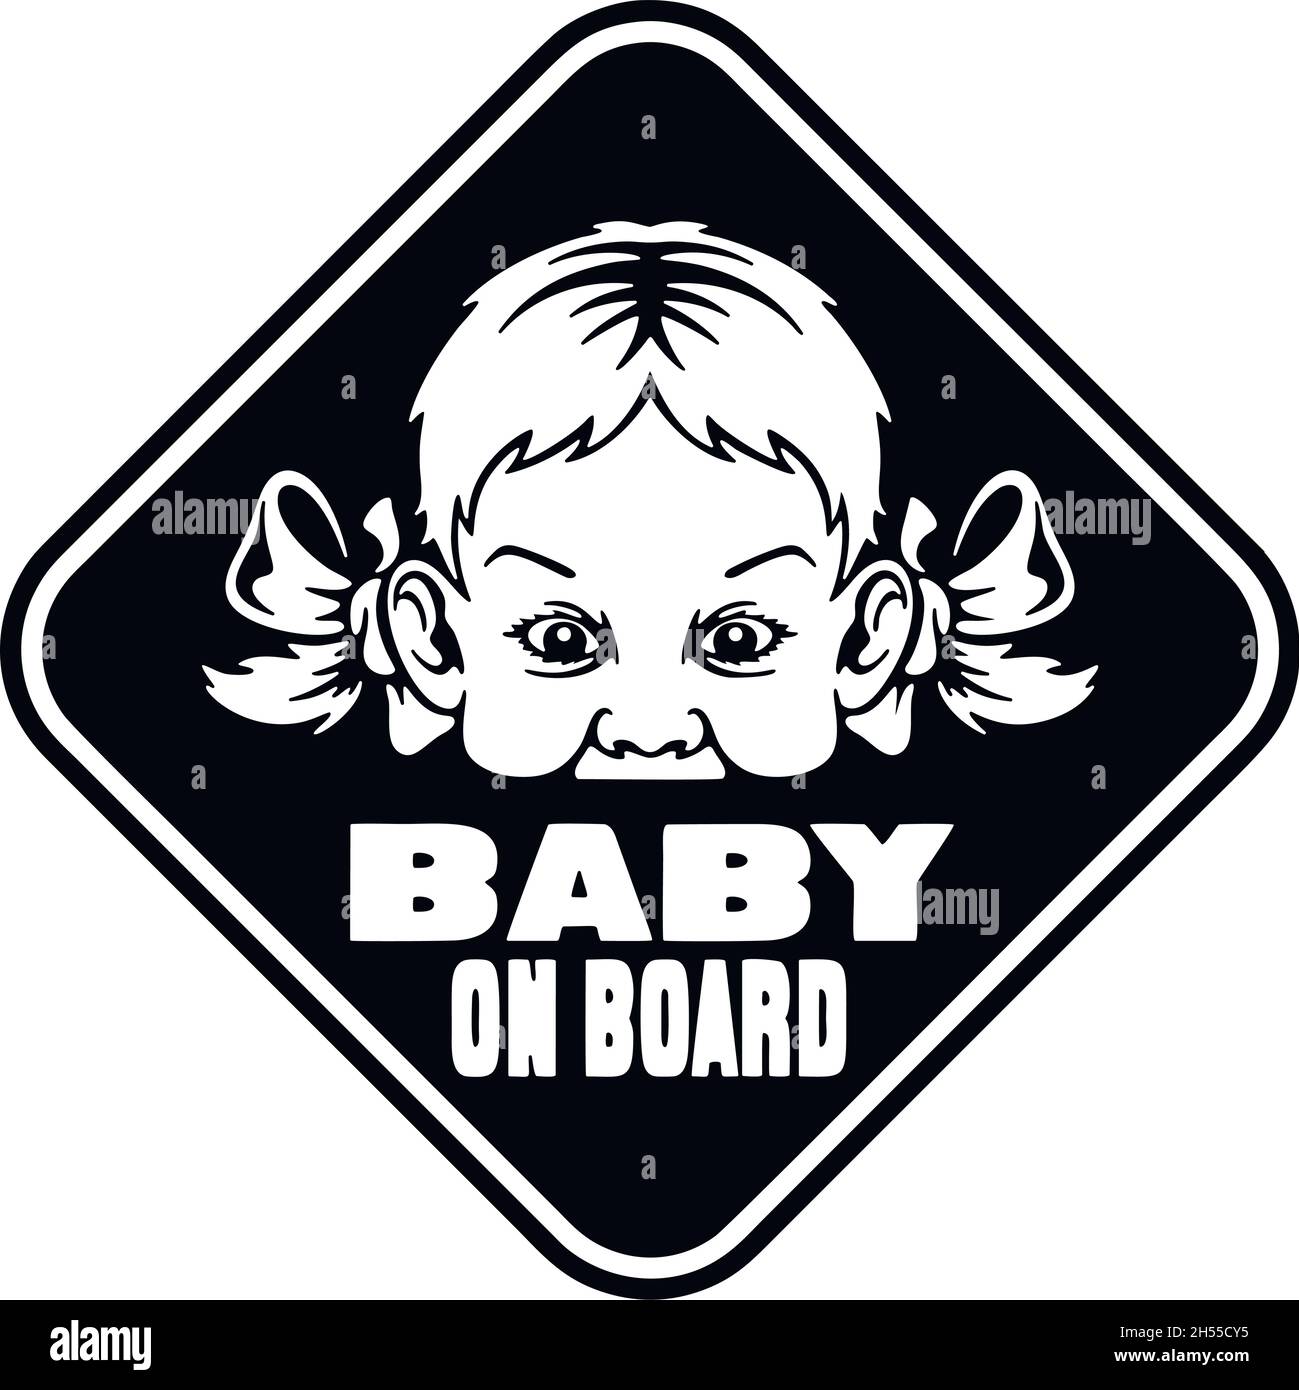 ADESIVO BIMBA BIMBO A BORDO BABY ON BOARD Stock Vector